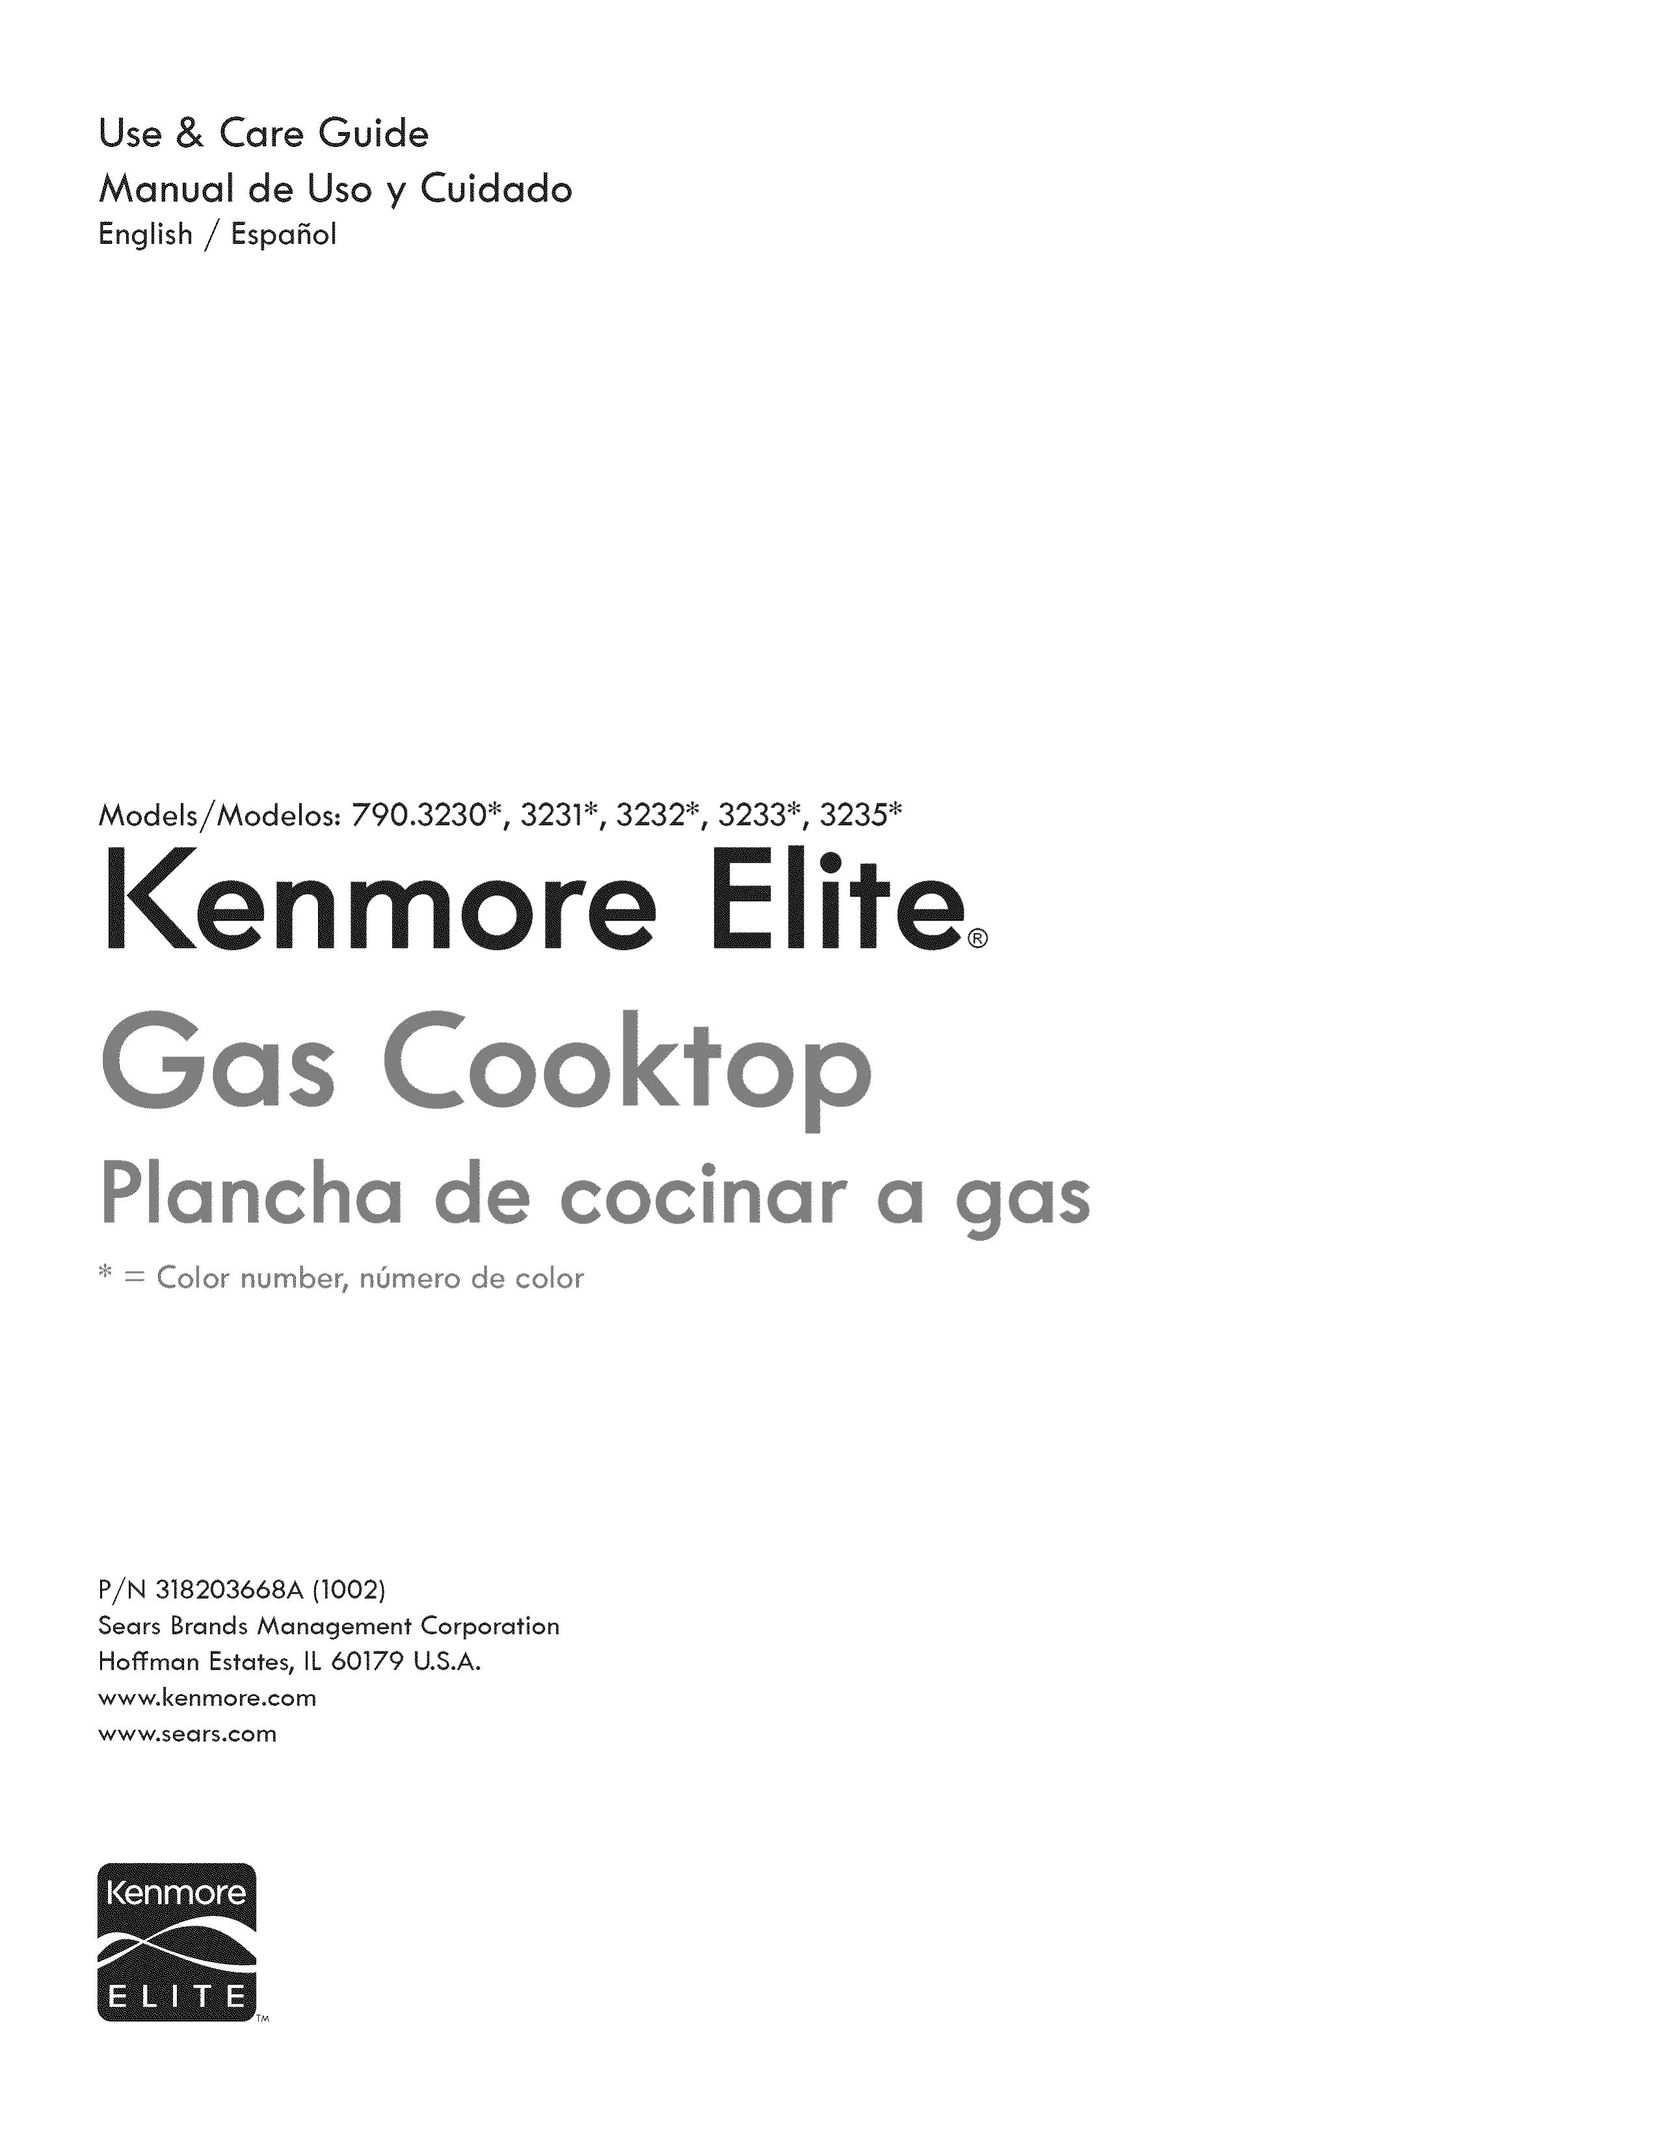 Kenmore 3233 Cooktop User Manual